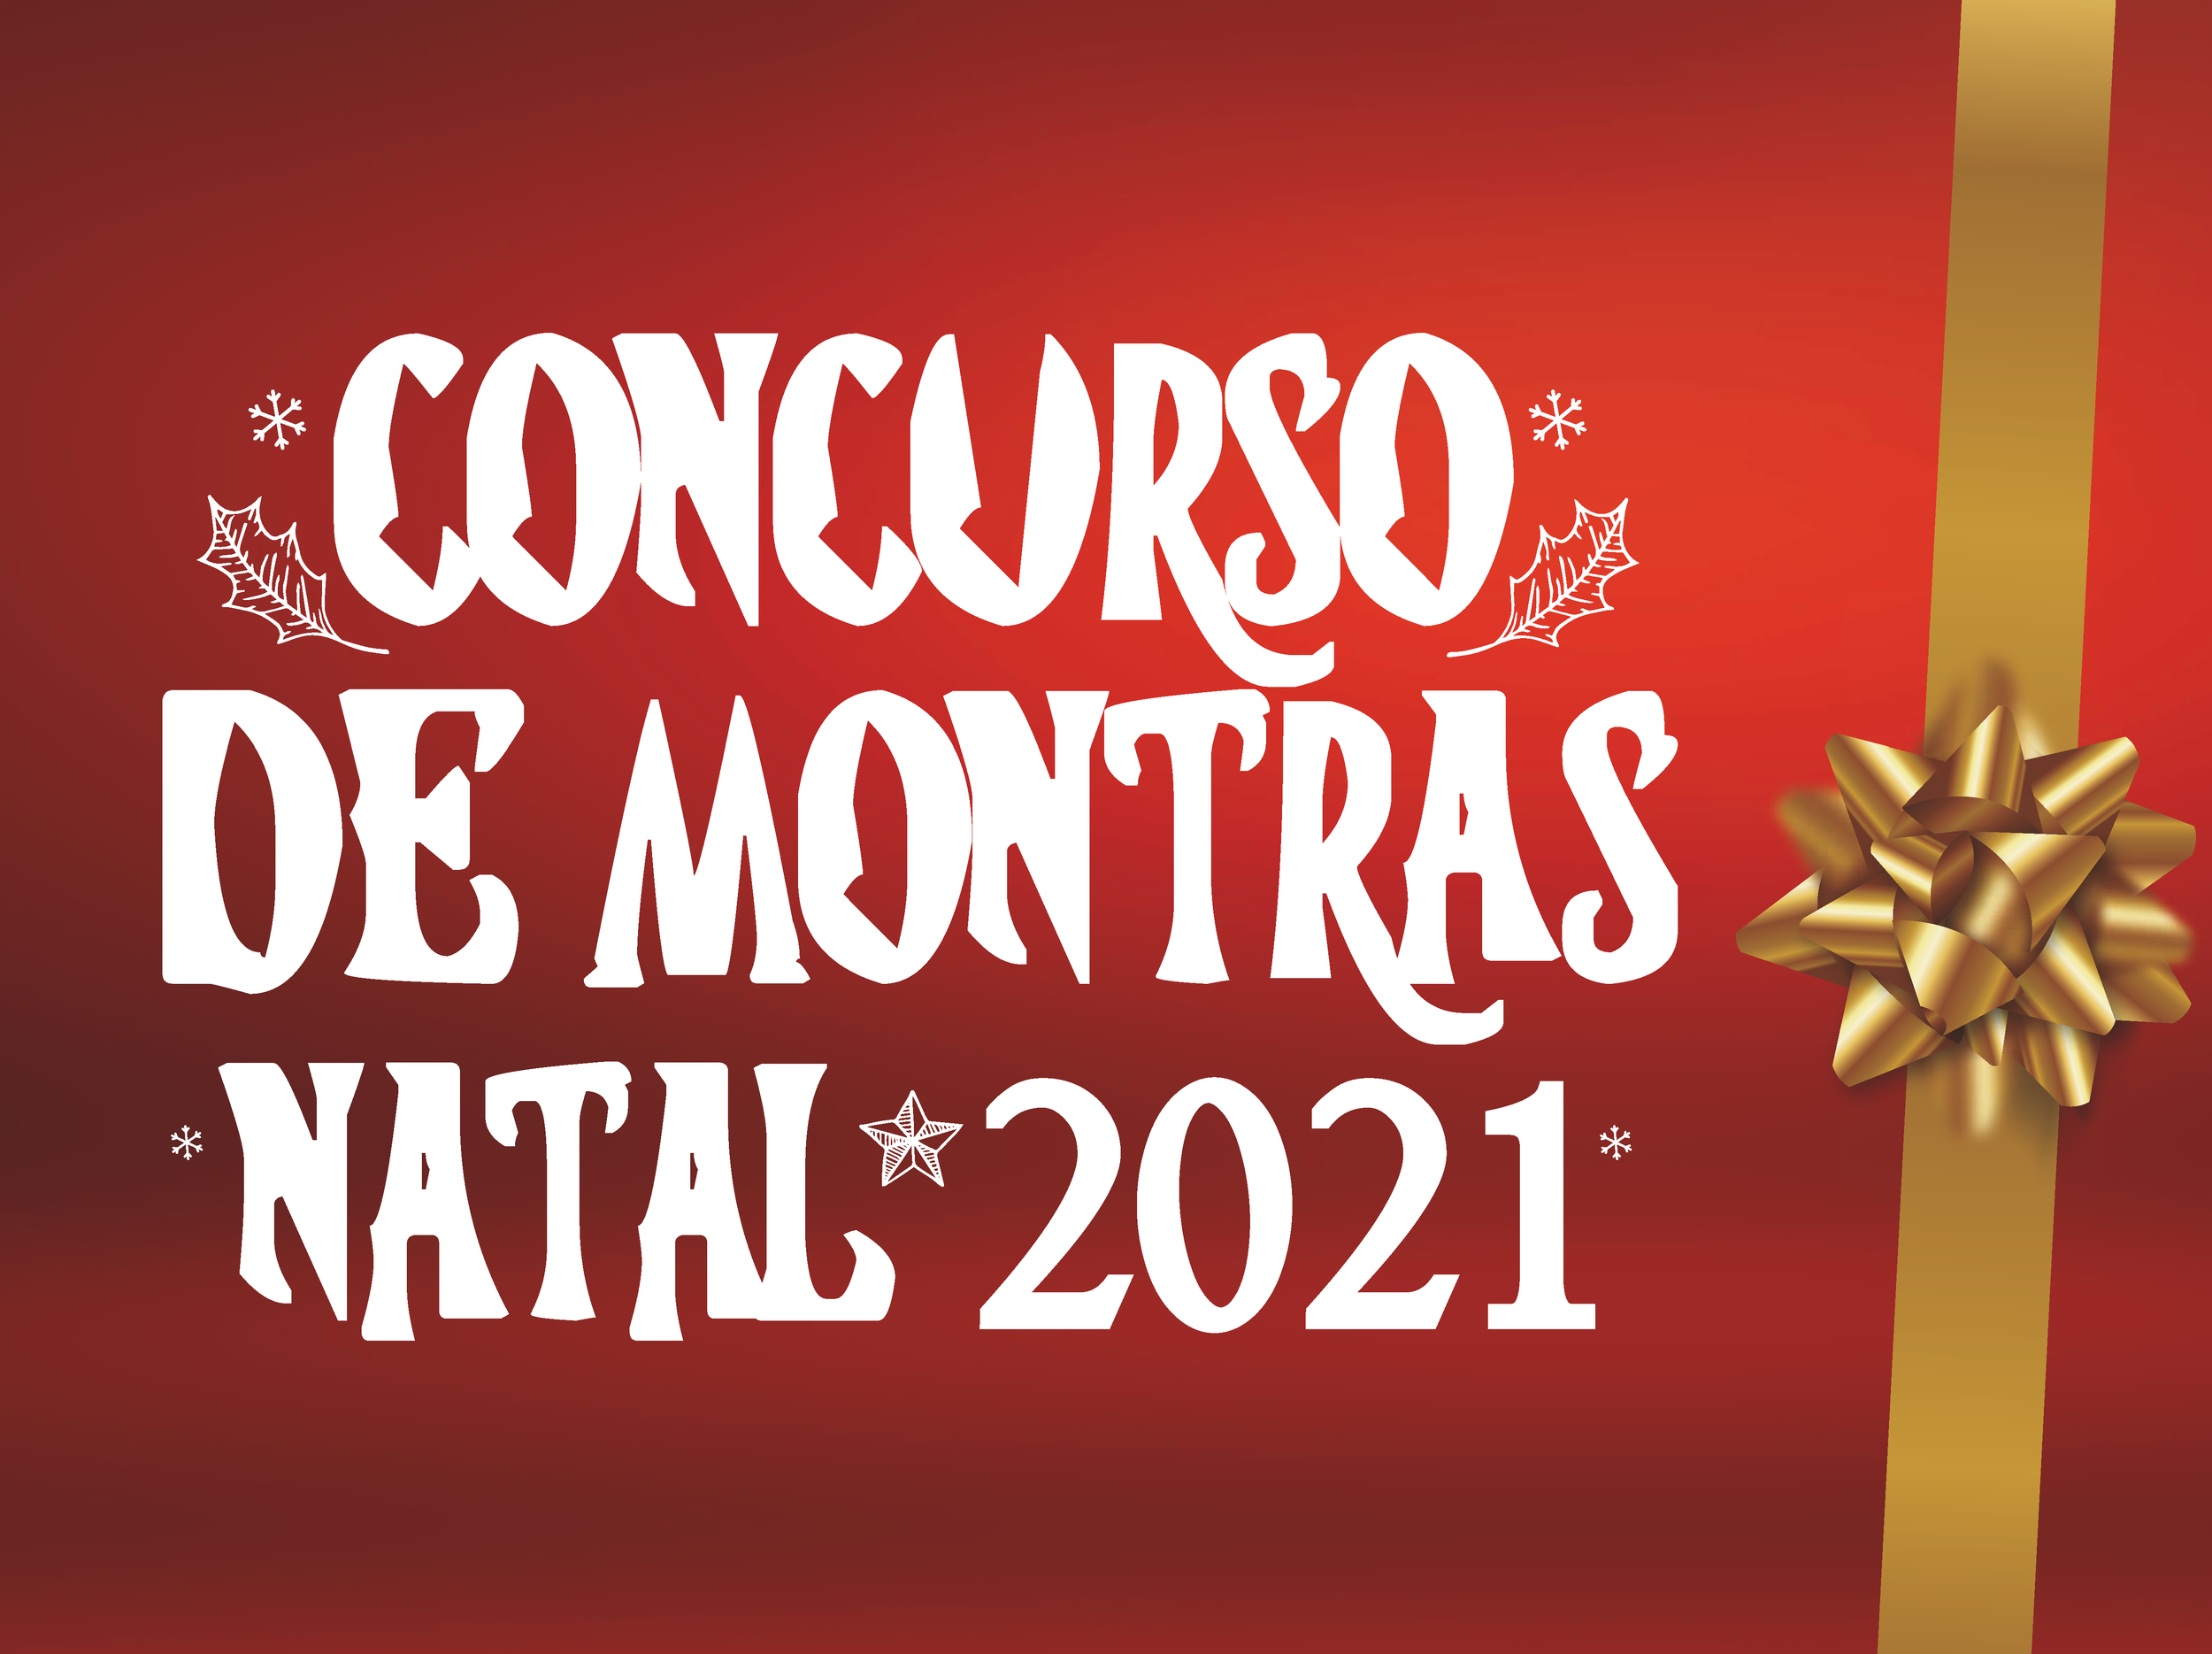 Entrega de prémios do "Concurso de Montras Natal 2021"